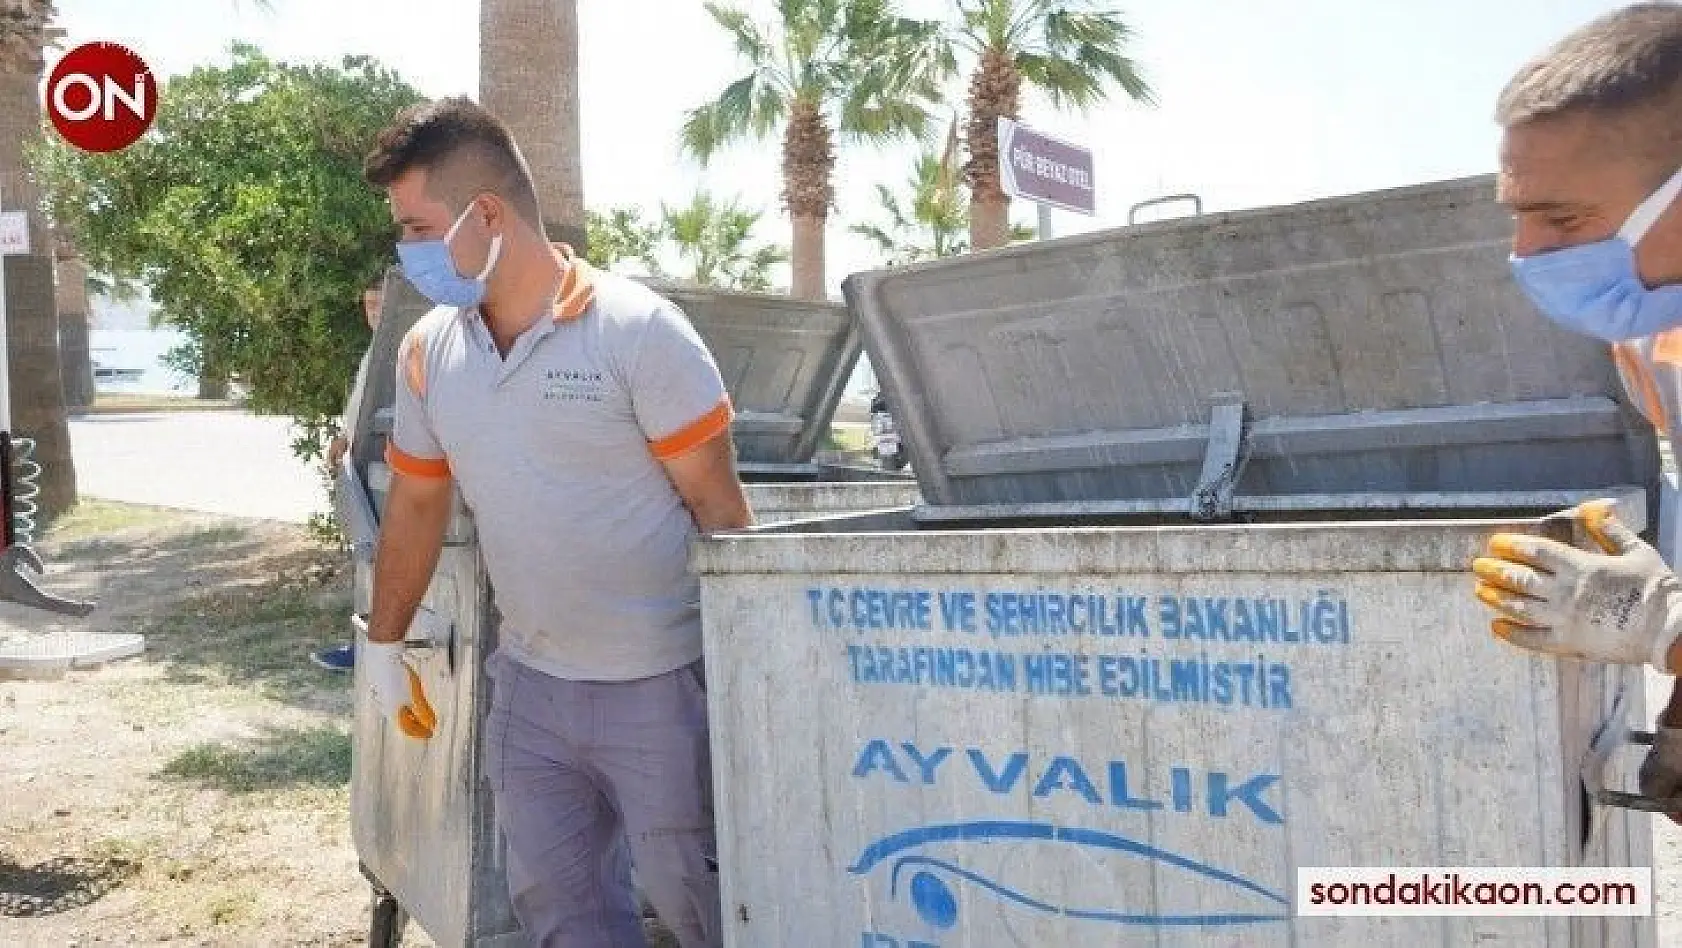 Ayvalık Belediyesi'nden bayram öncesi konteyner temizliği